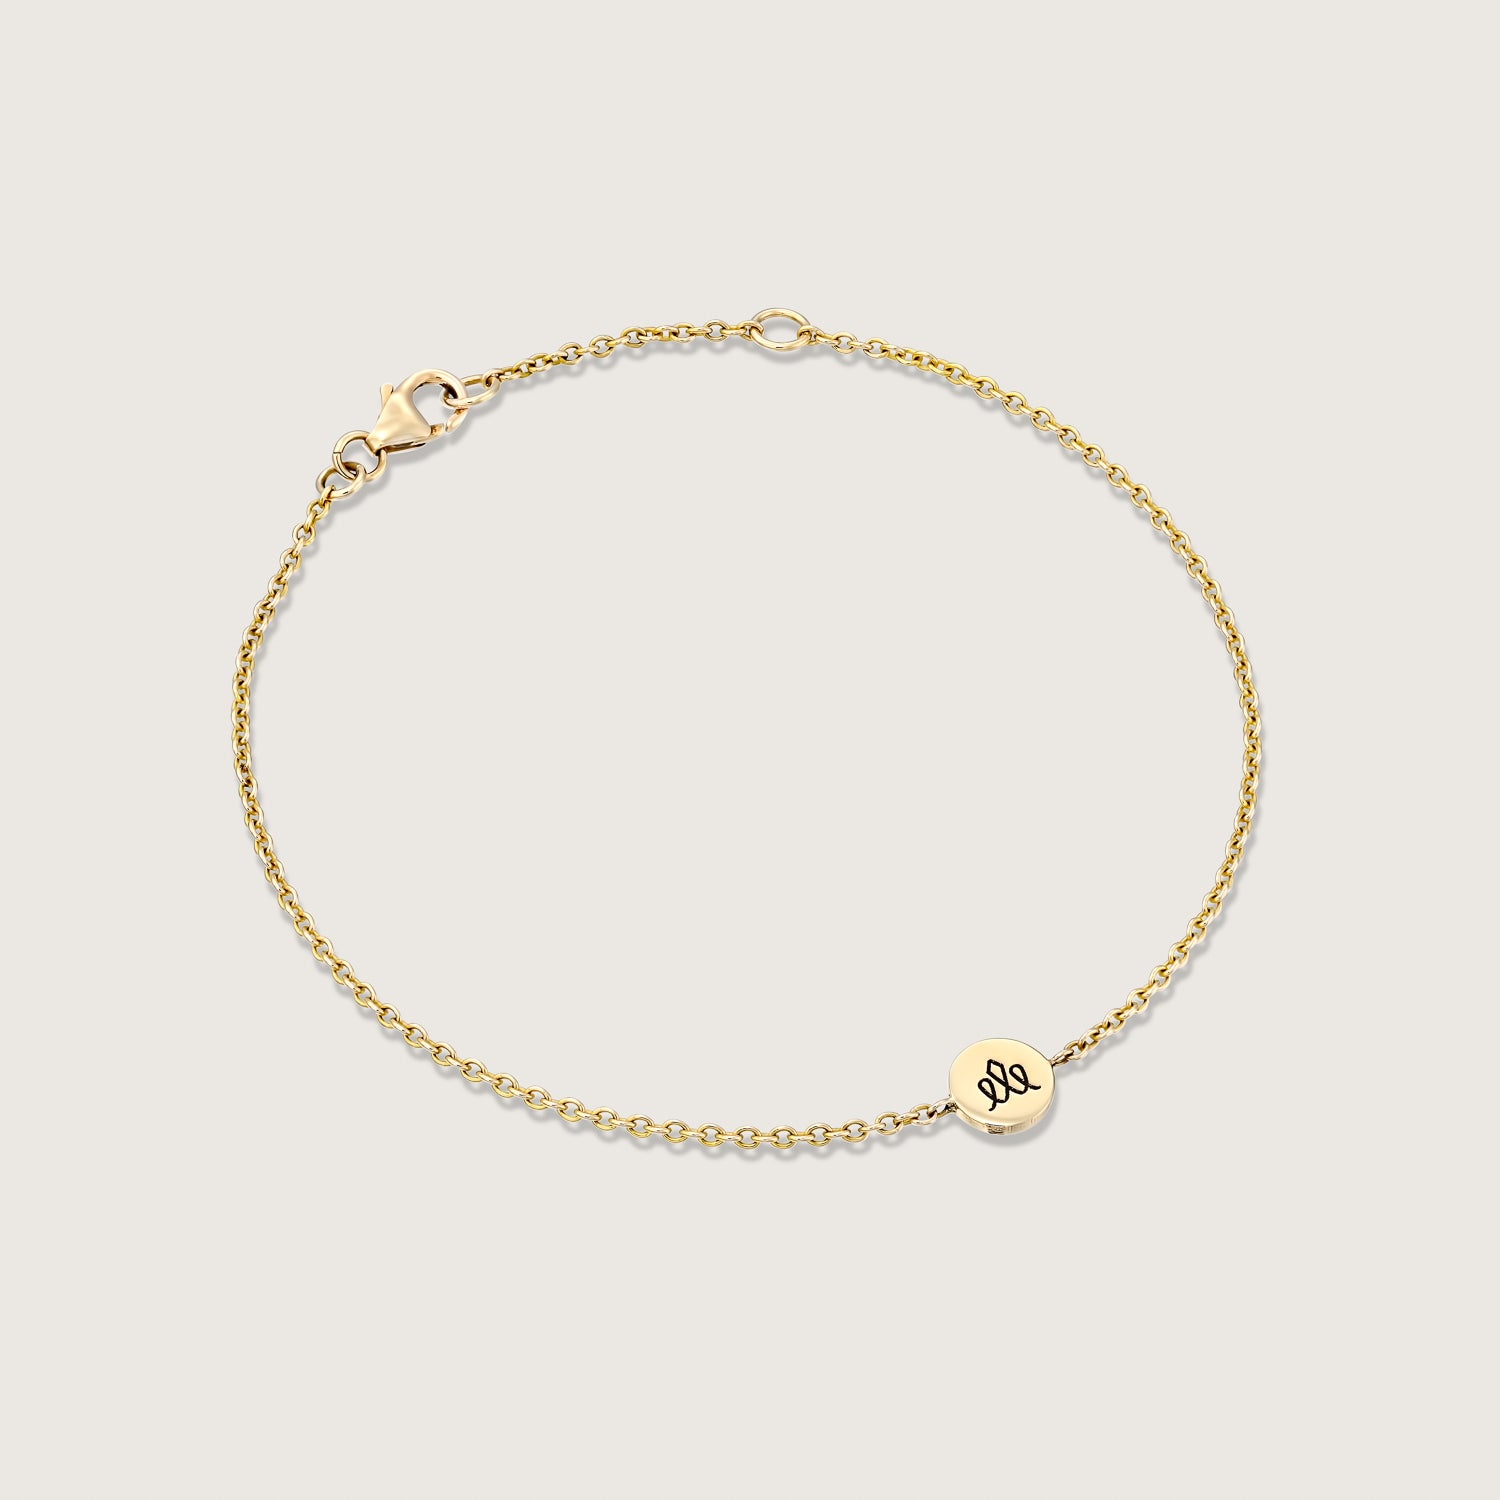 Round Crown element gold chain bracelet